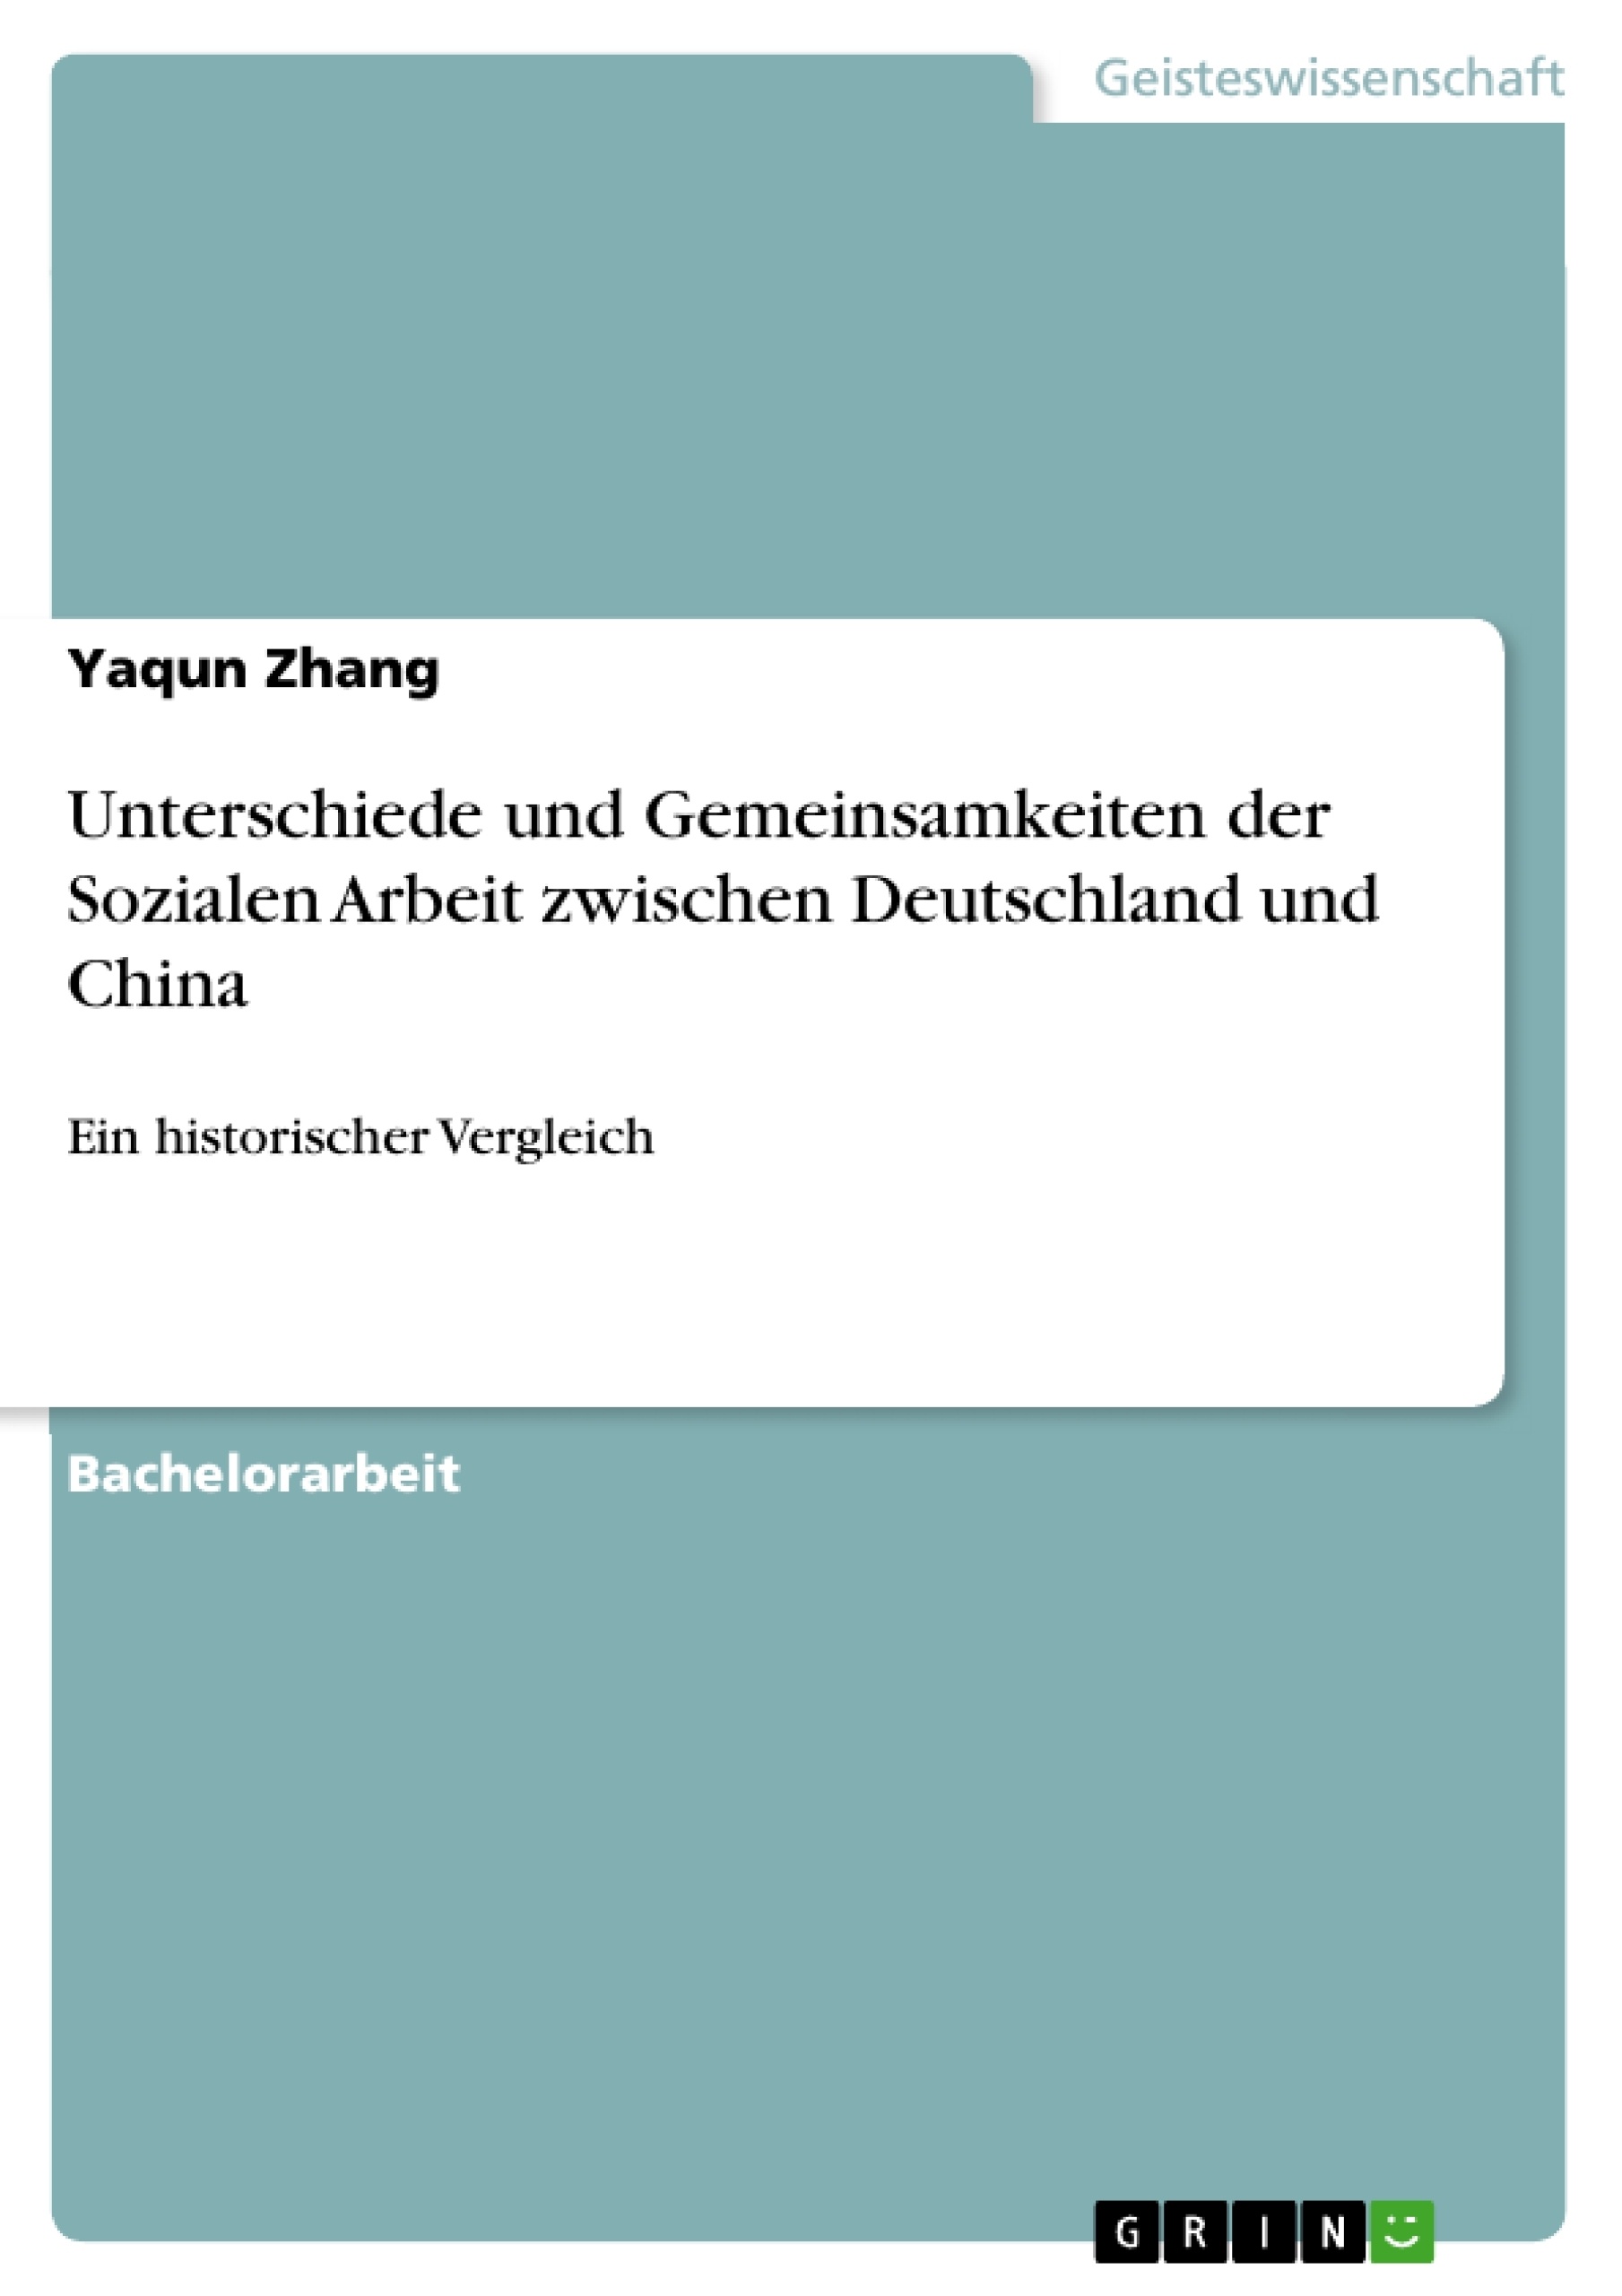 Titre: Unterschiede und Gemeinsamkeiten der Sozialen Arbeit zwischen Deutschland und China